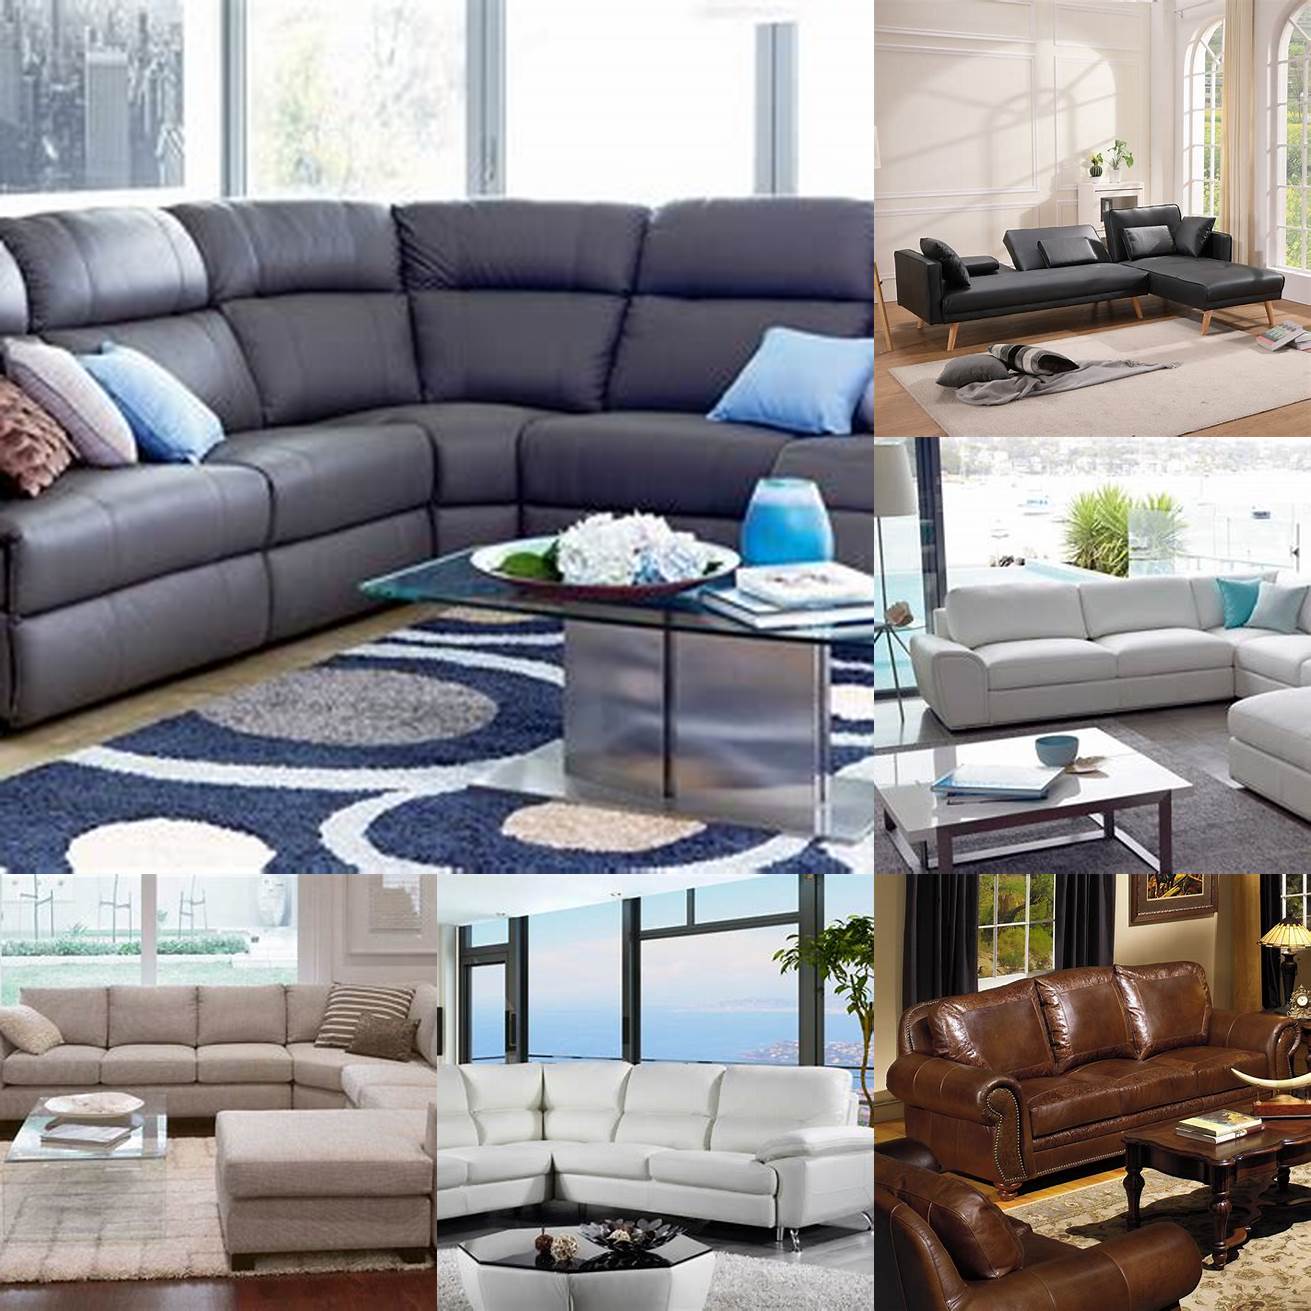 A leather lounge sofa